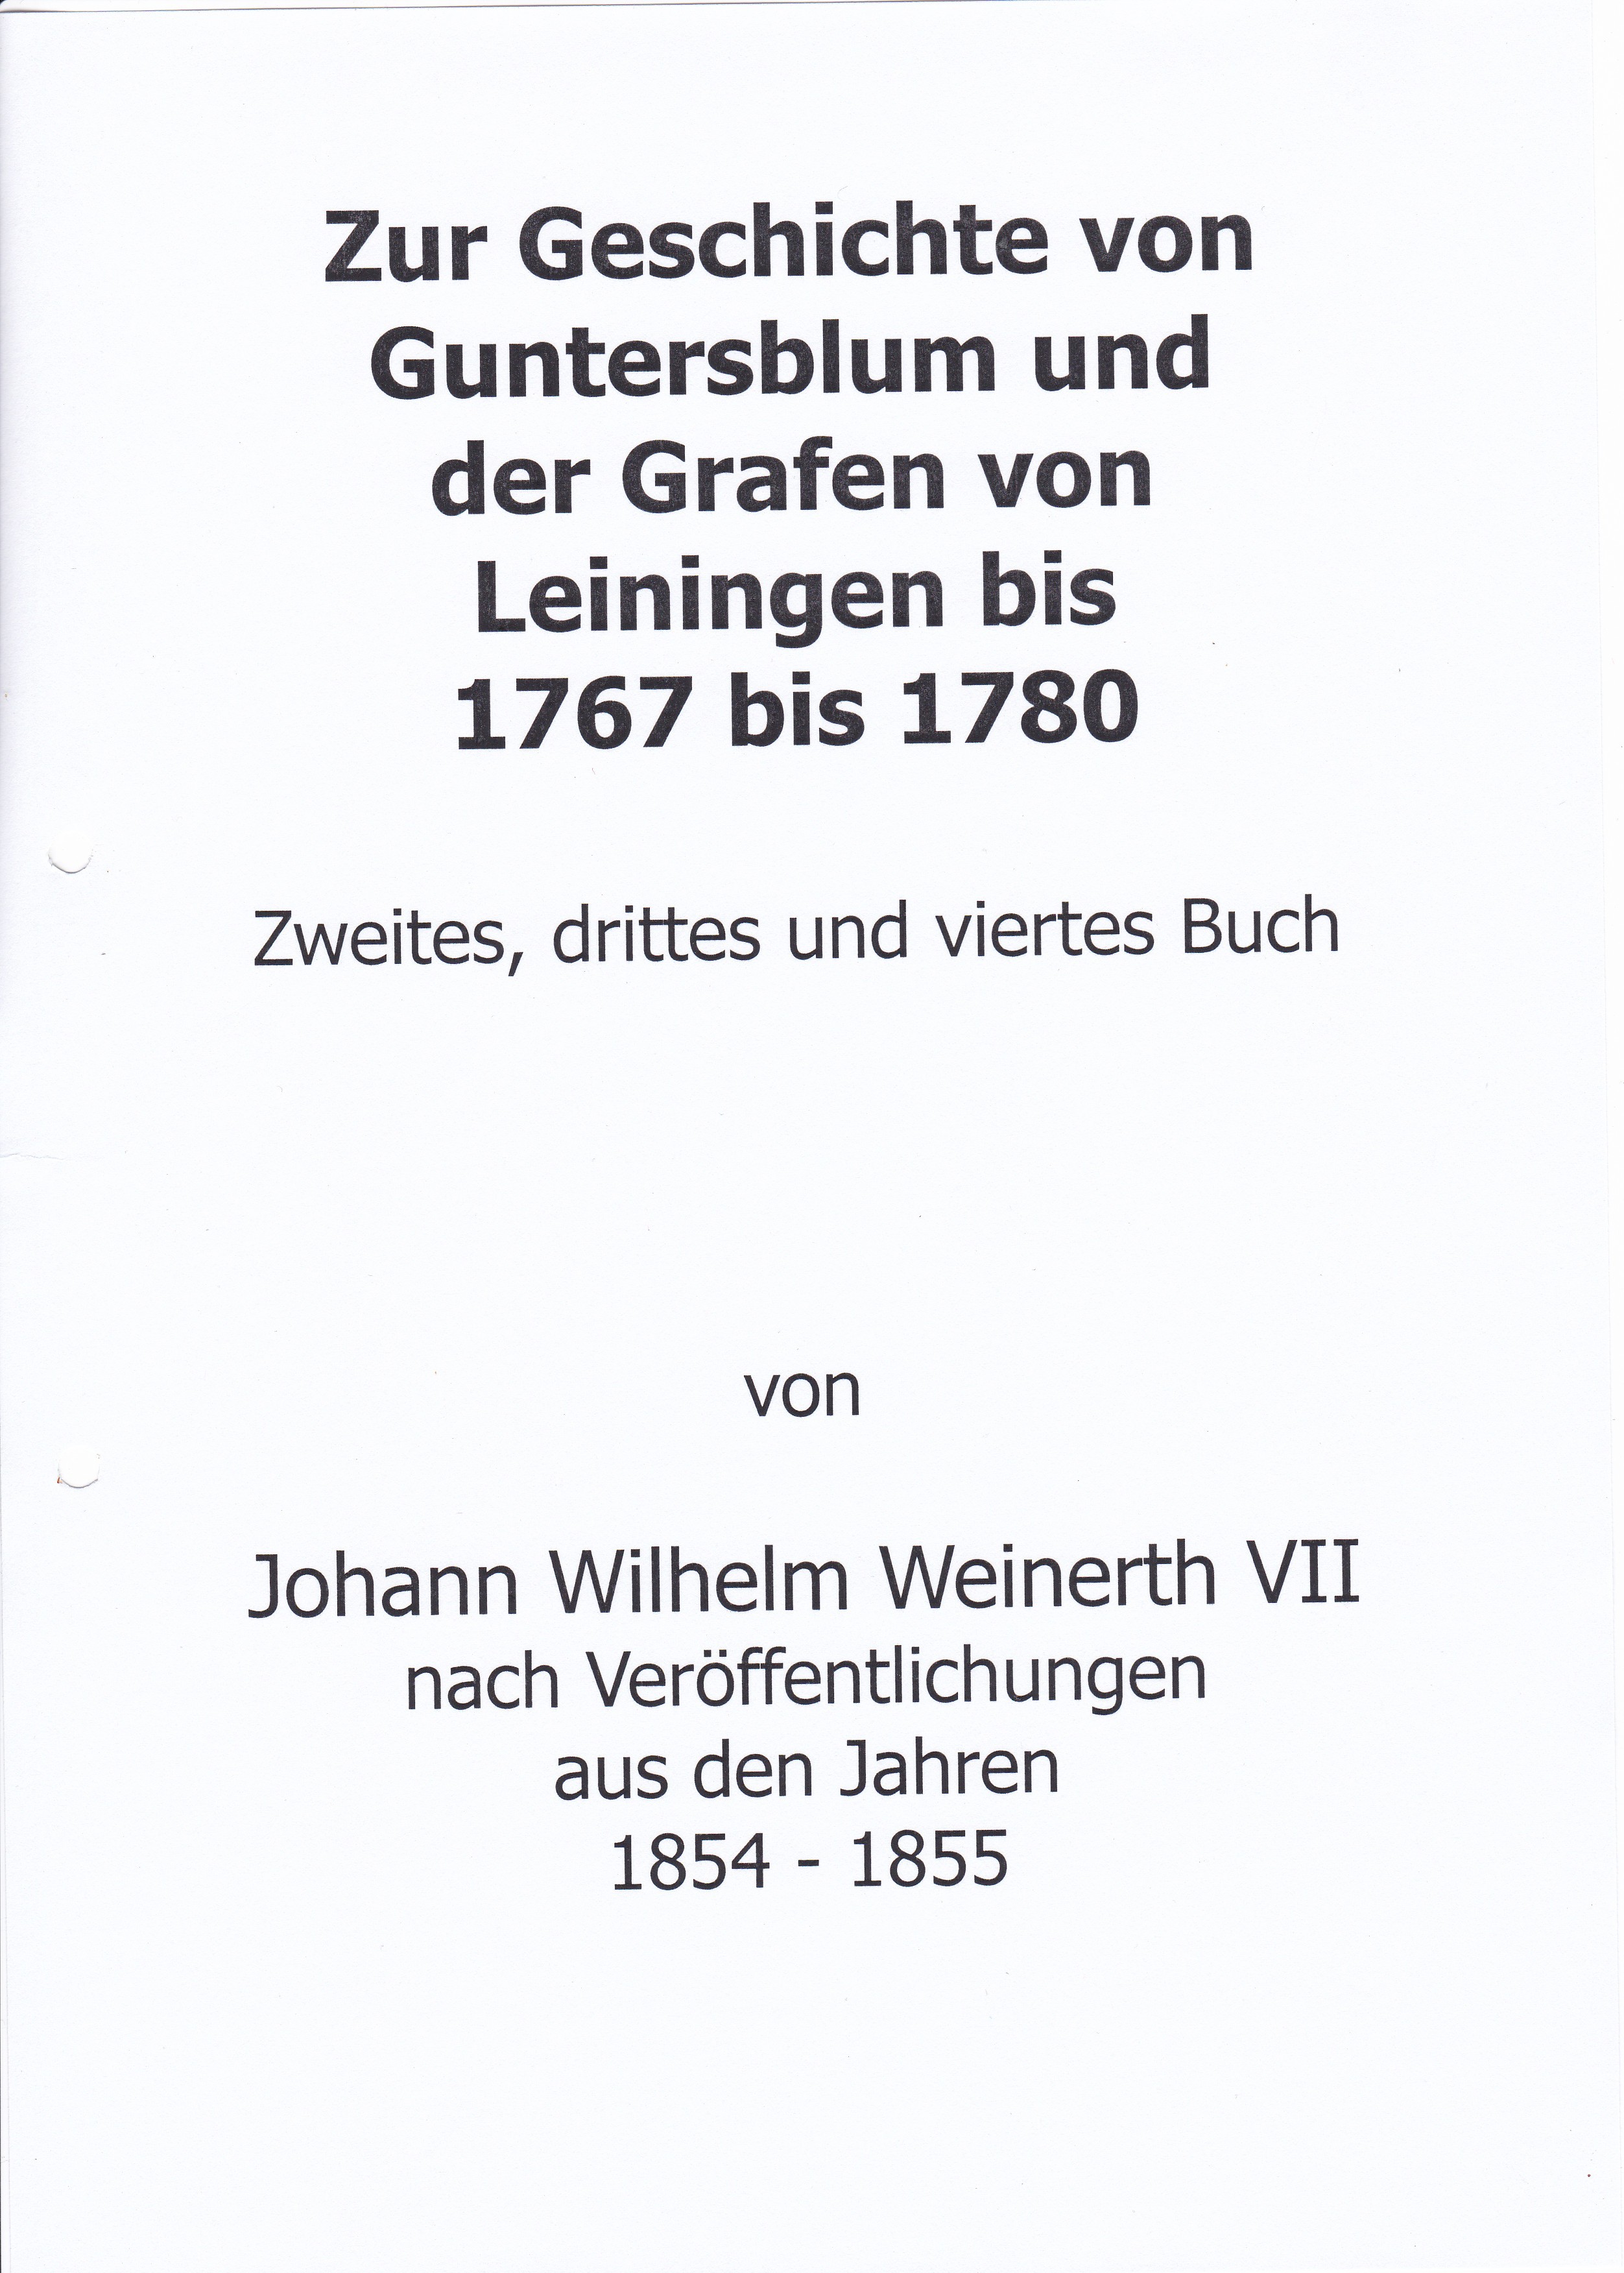 Zur Geschichte von Guntersblum und der Grafen von Leiningen - Buch 2 bis 4 (Museum Guntersblum  im Kellerweg 20 CC BY-NC-SA)